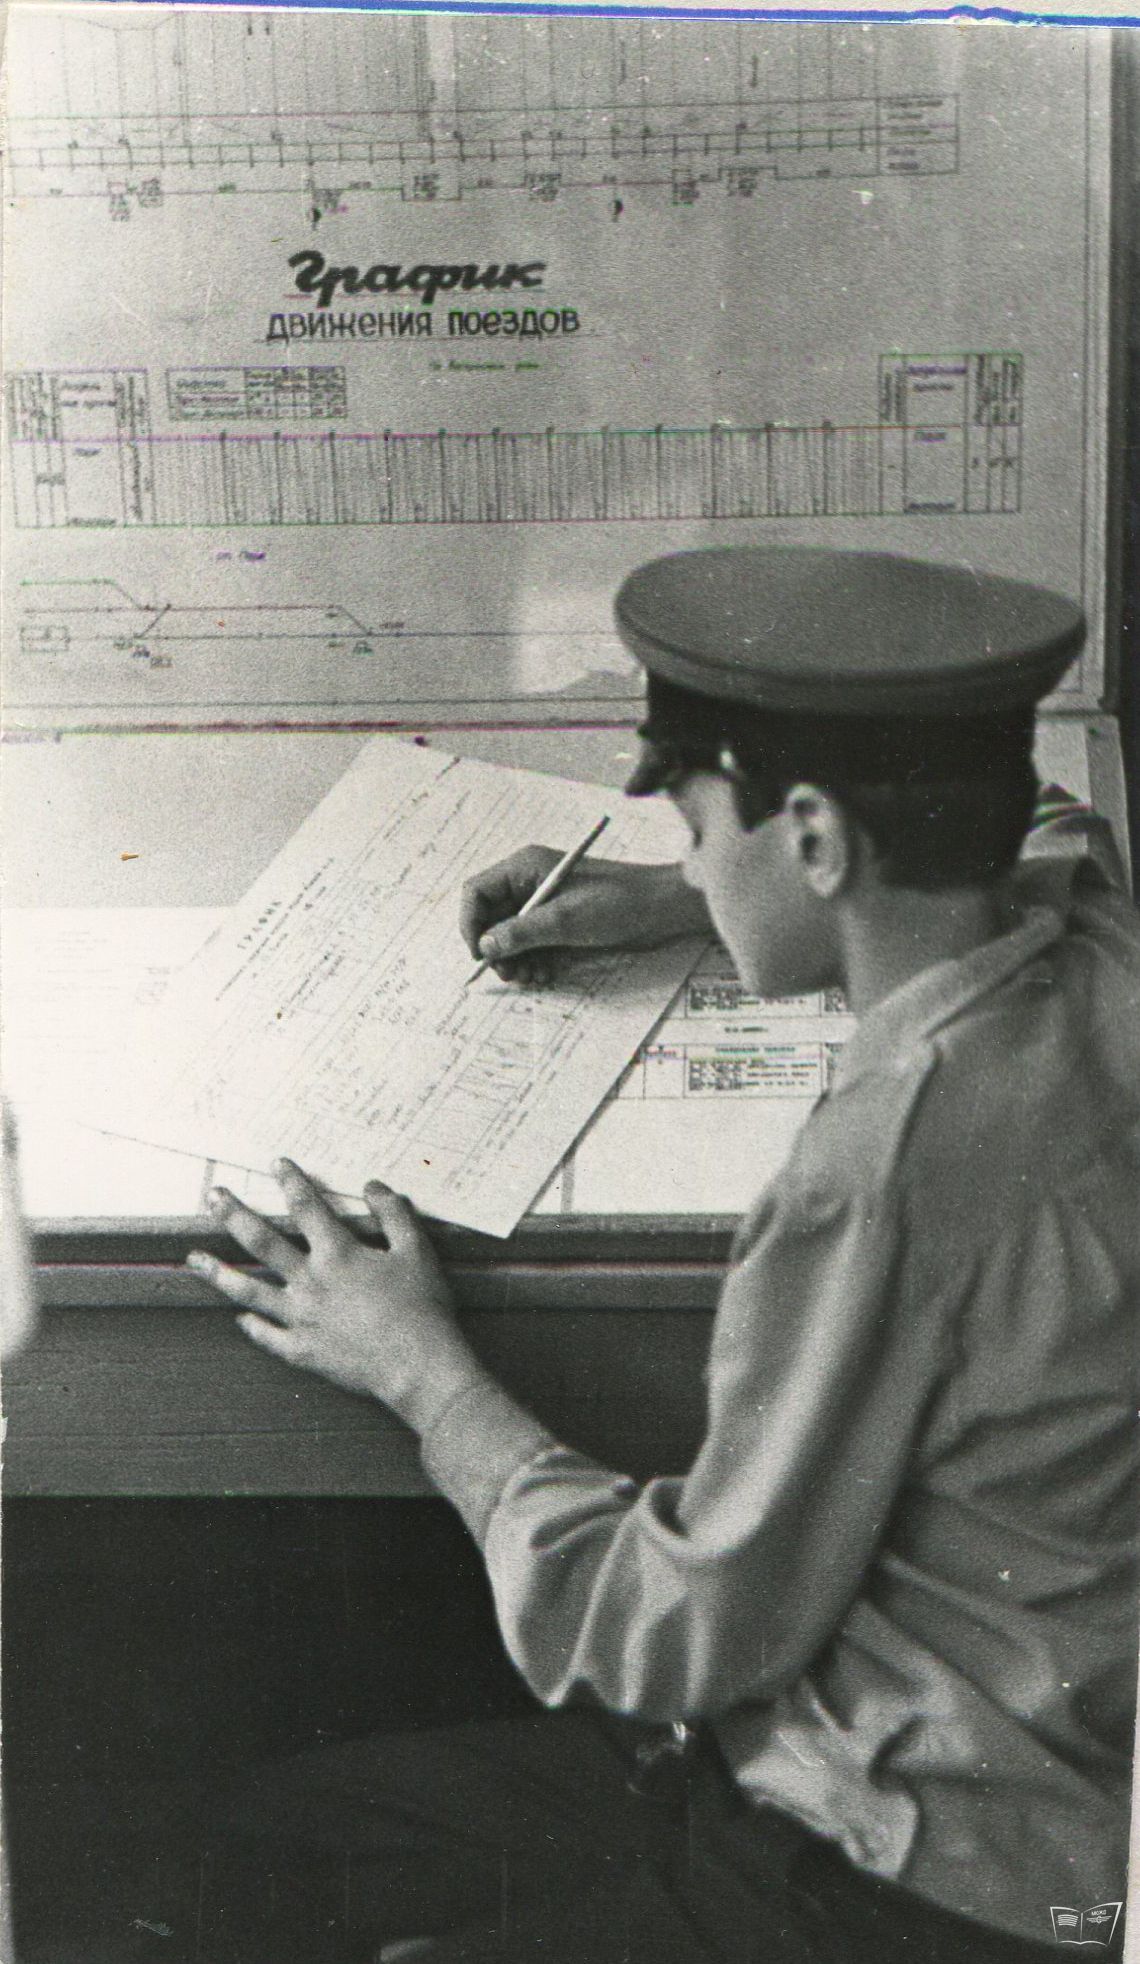 ДНЦ (диспетчер) заполняет график движения поездов